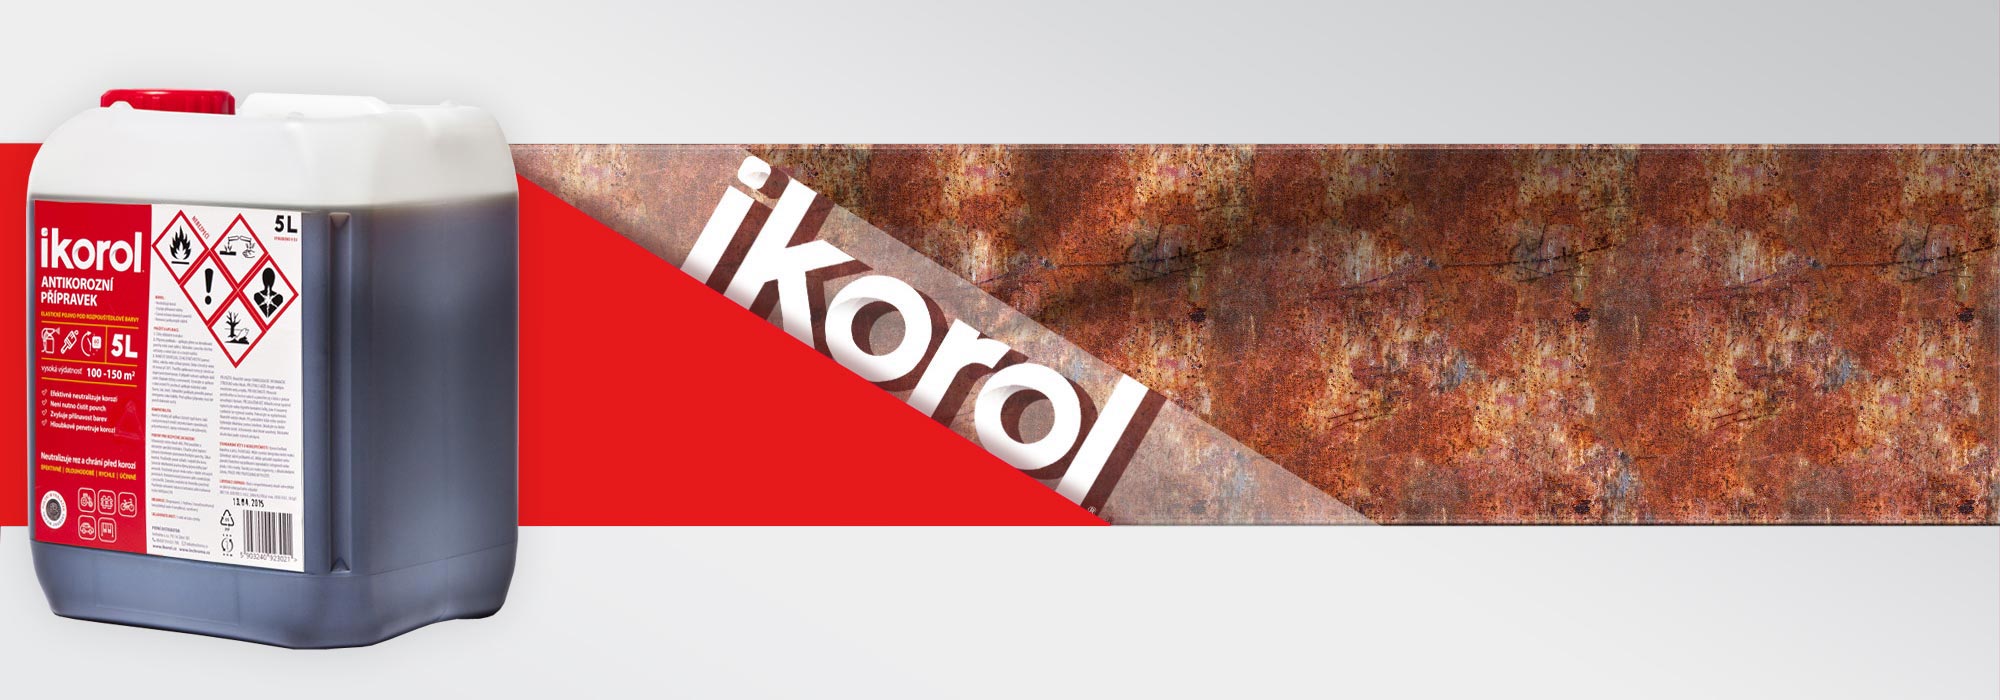 ikorol3.jpg